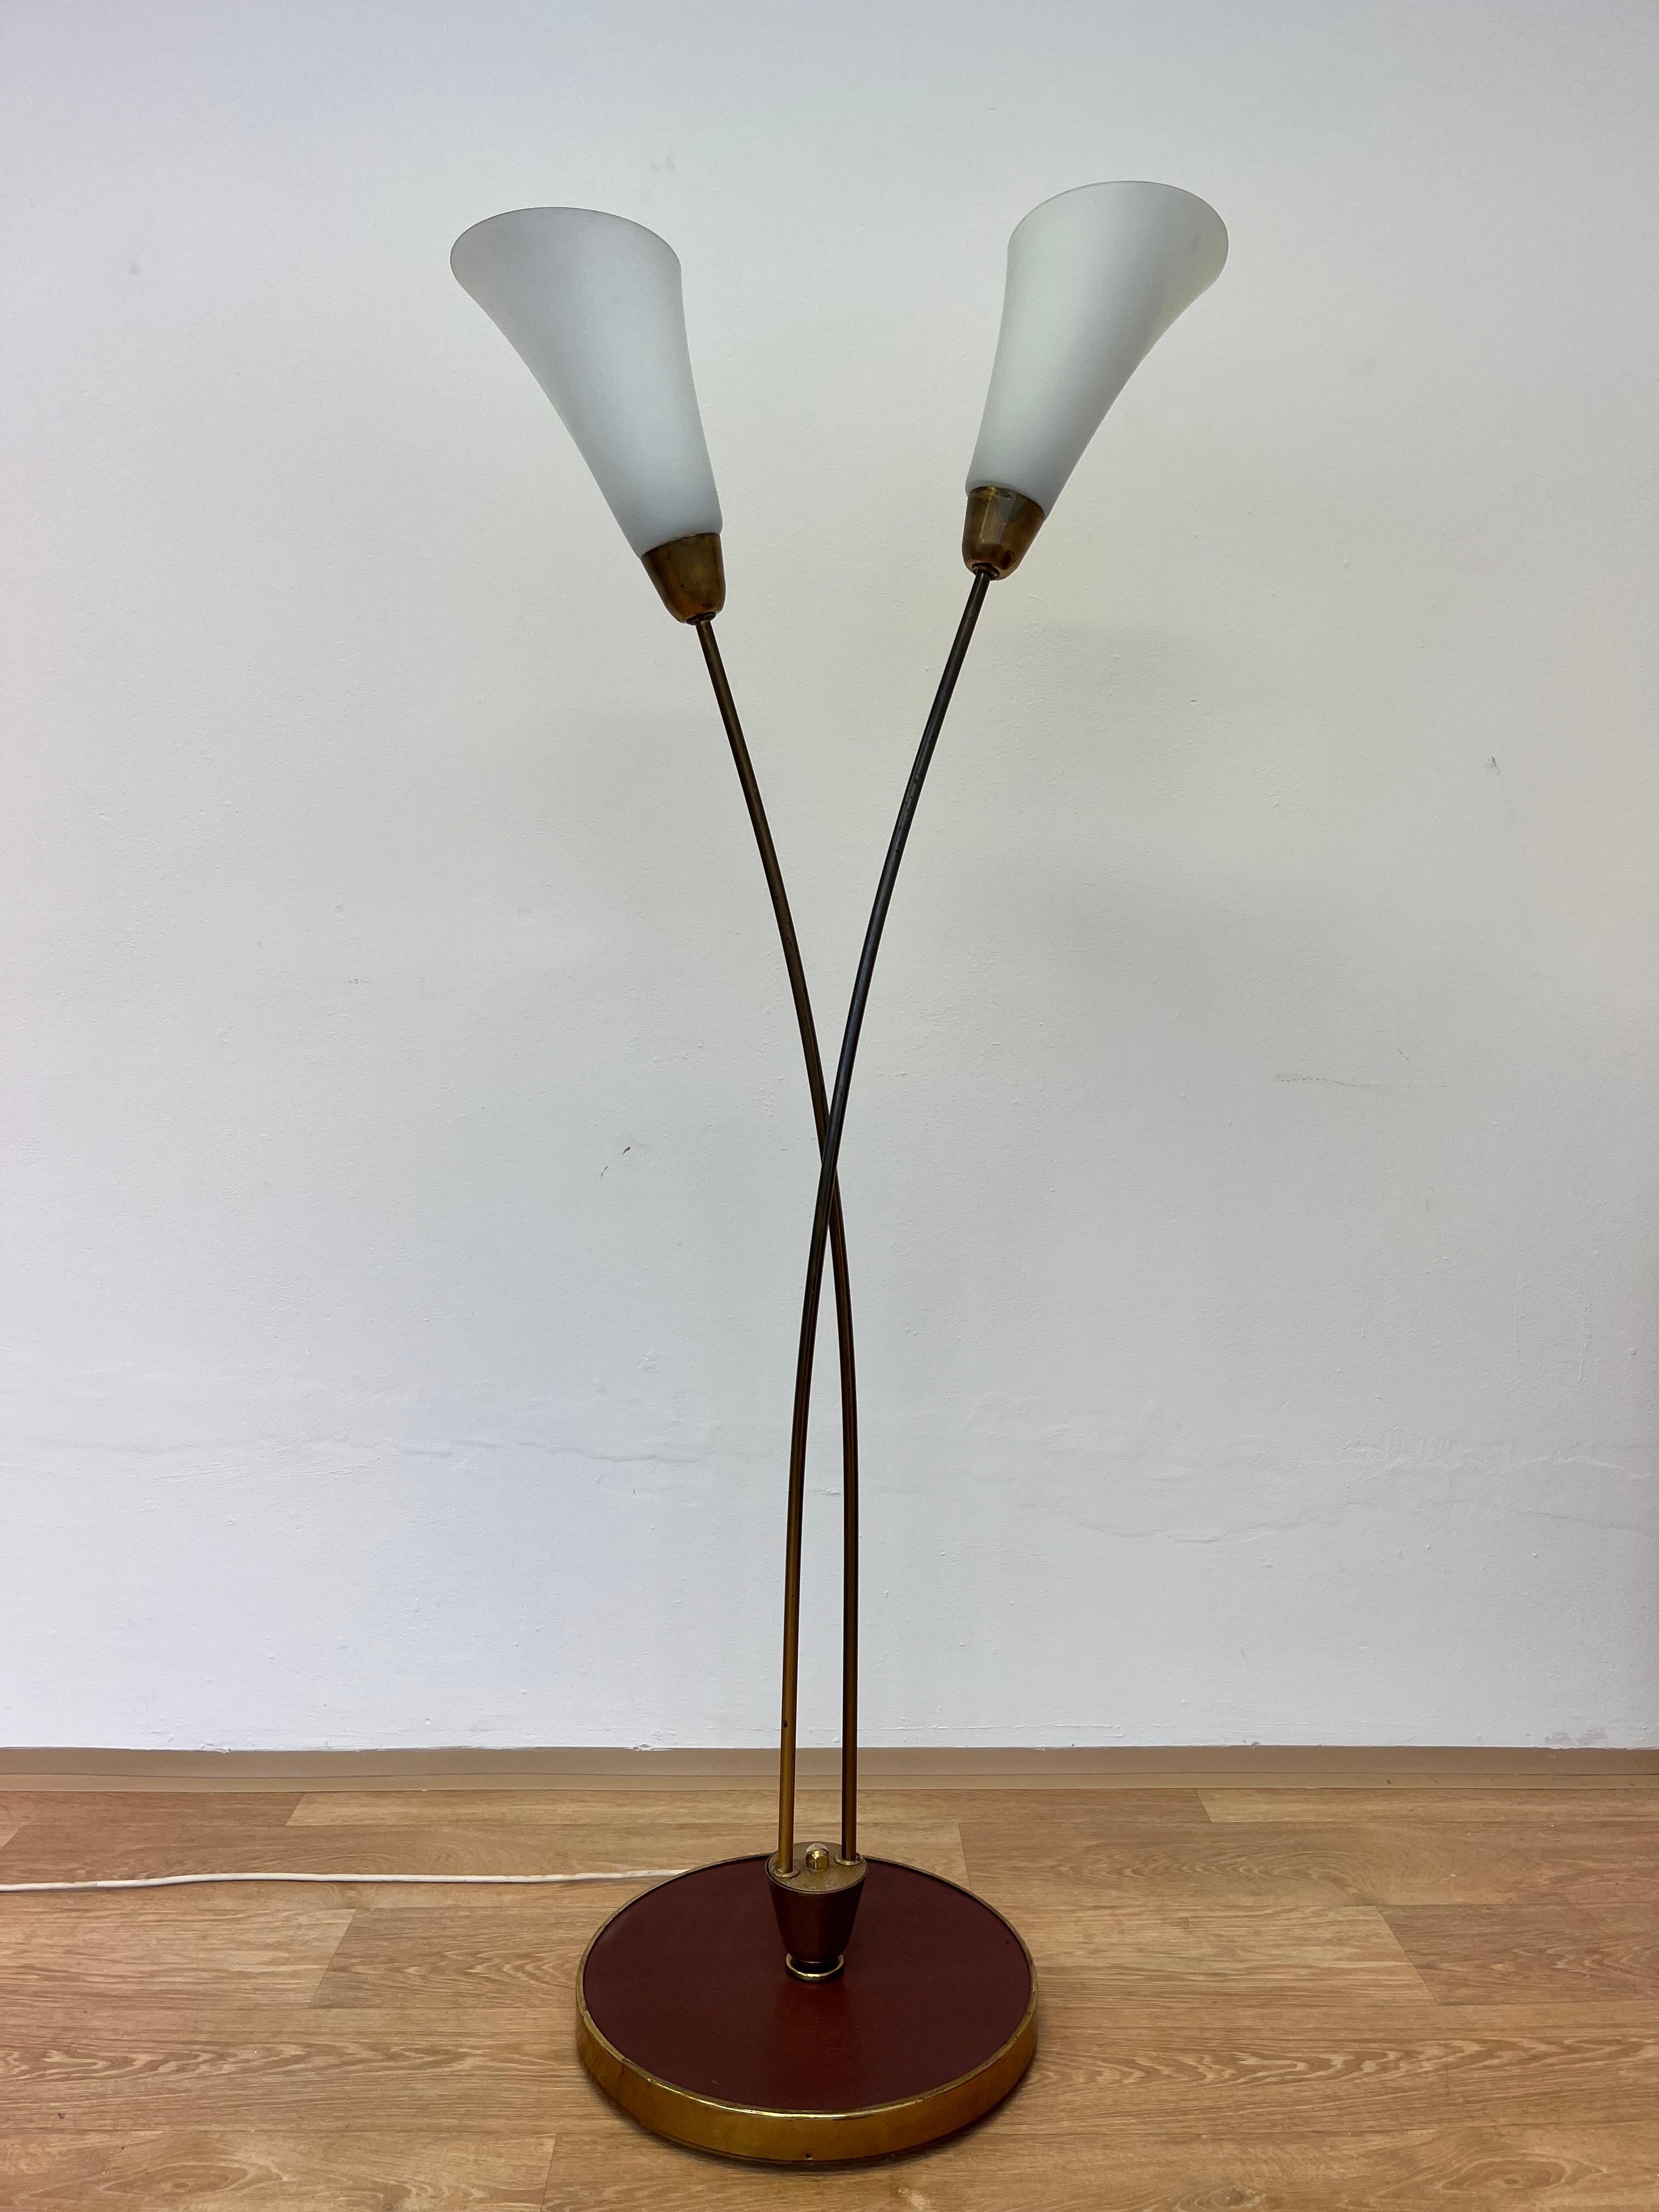 - 1940s
- Hergestellt aus Messing
- Opalfarbene Töne
- Originalzustand mit Patina
- Sockel der Lampe - Linoleum
- Maße: Durchmesser des Sockels 40 cm.
jrrf